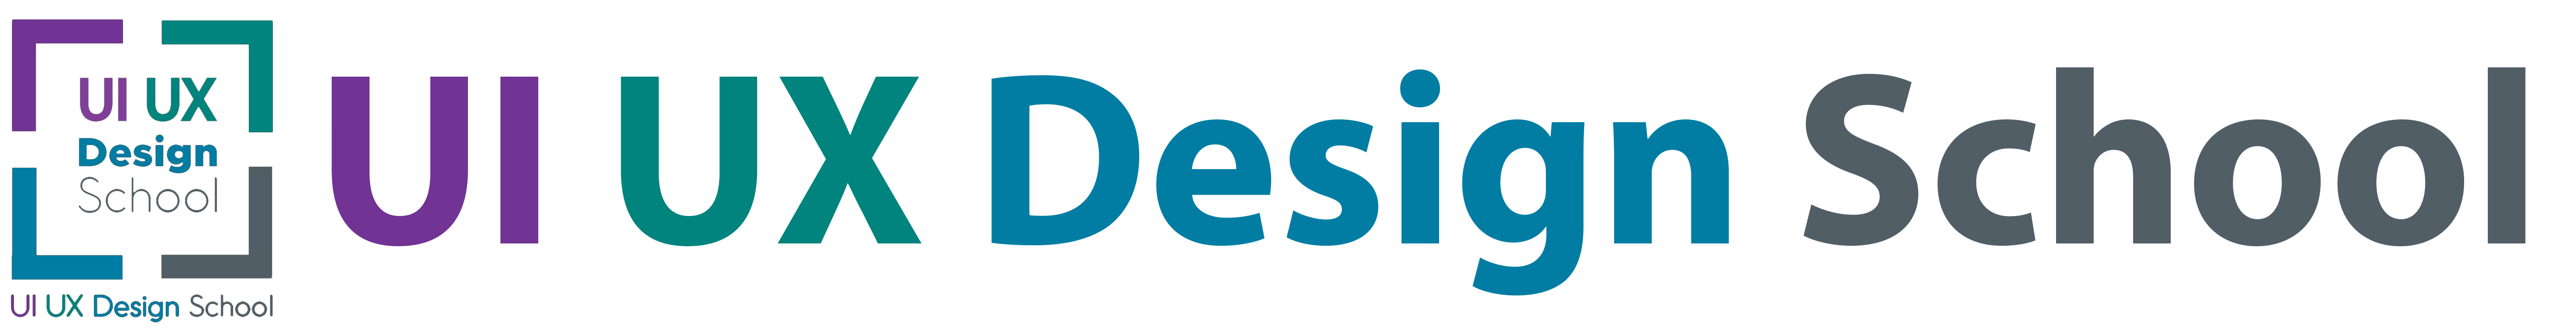 UI UX Design School logo